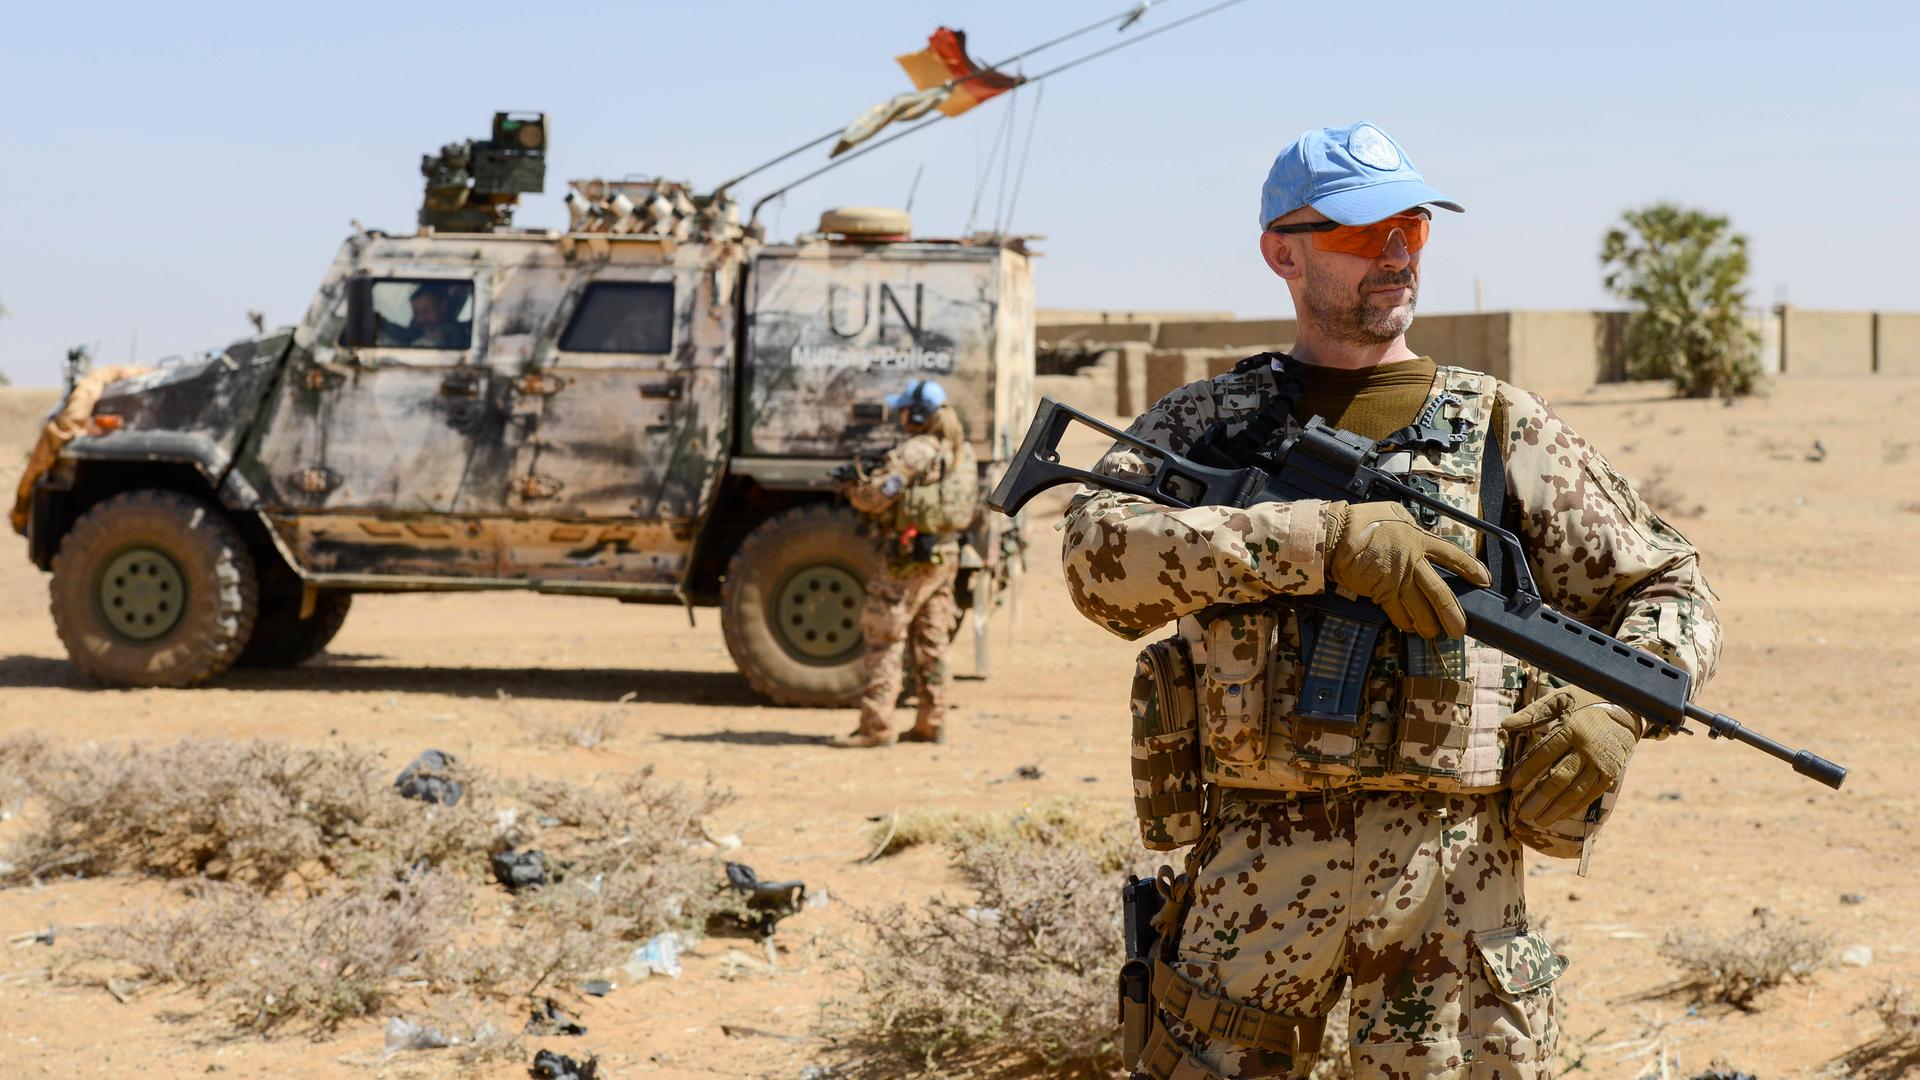 Patrouille der UN-Mission MInusma im Dorf Bagoundje, ein deutscher Blauhelm Soldat mit Sturmgewehr in Mali, 2020.